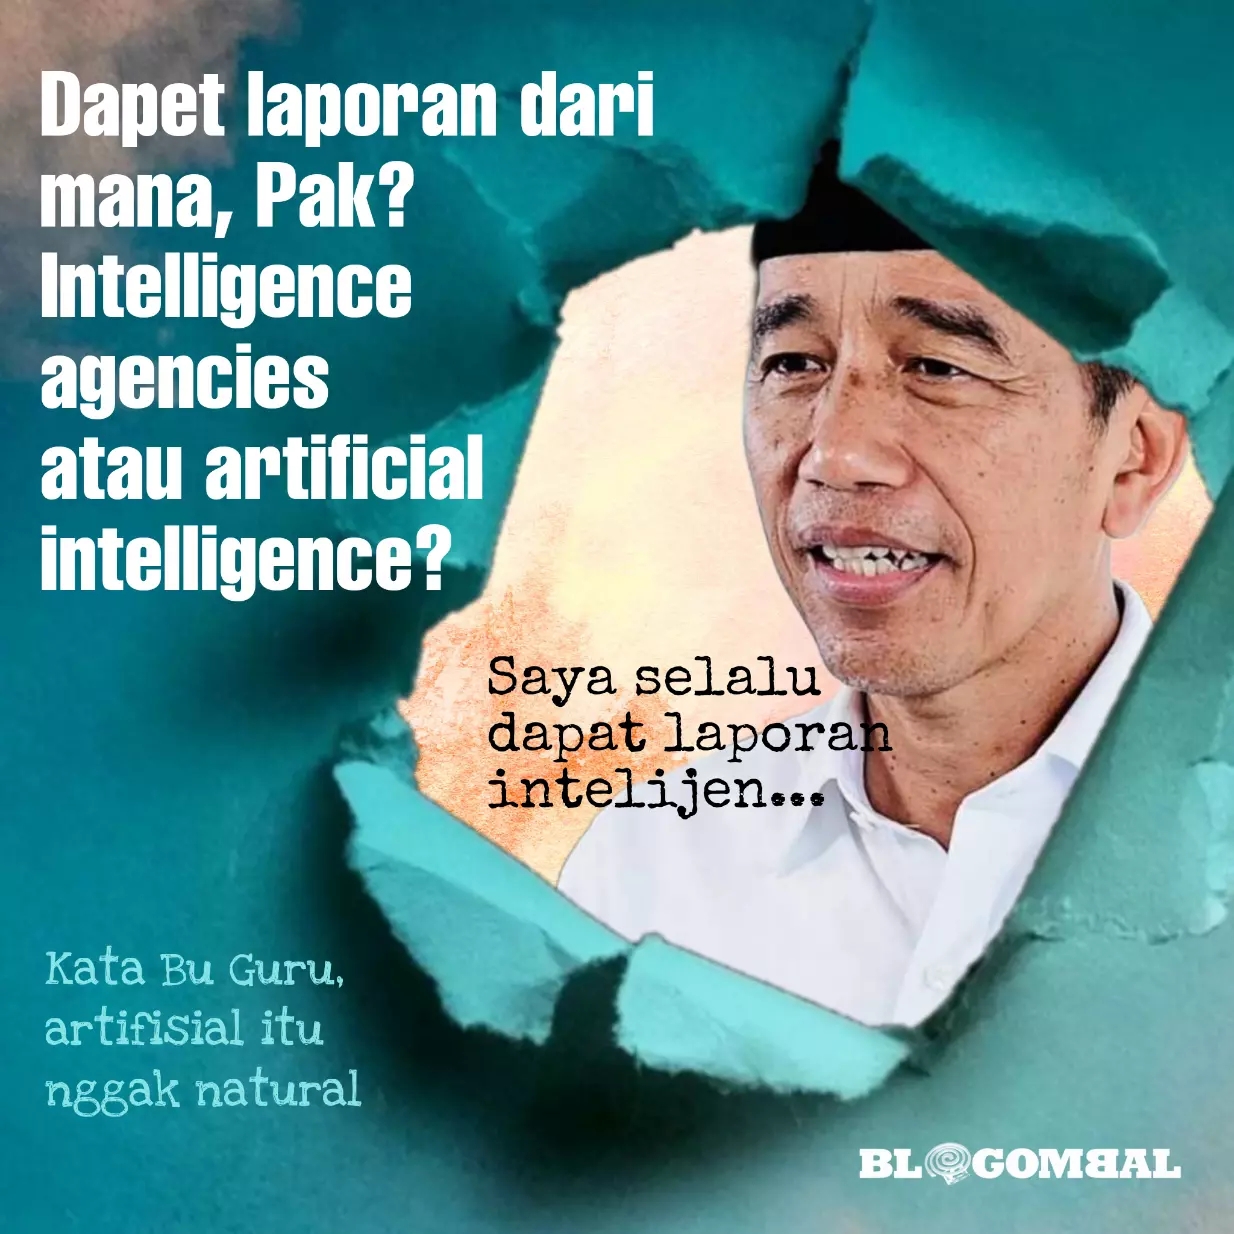 Jokowi menyalahgunakan badan intelijen untuk memata-matai parpol? 